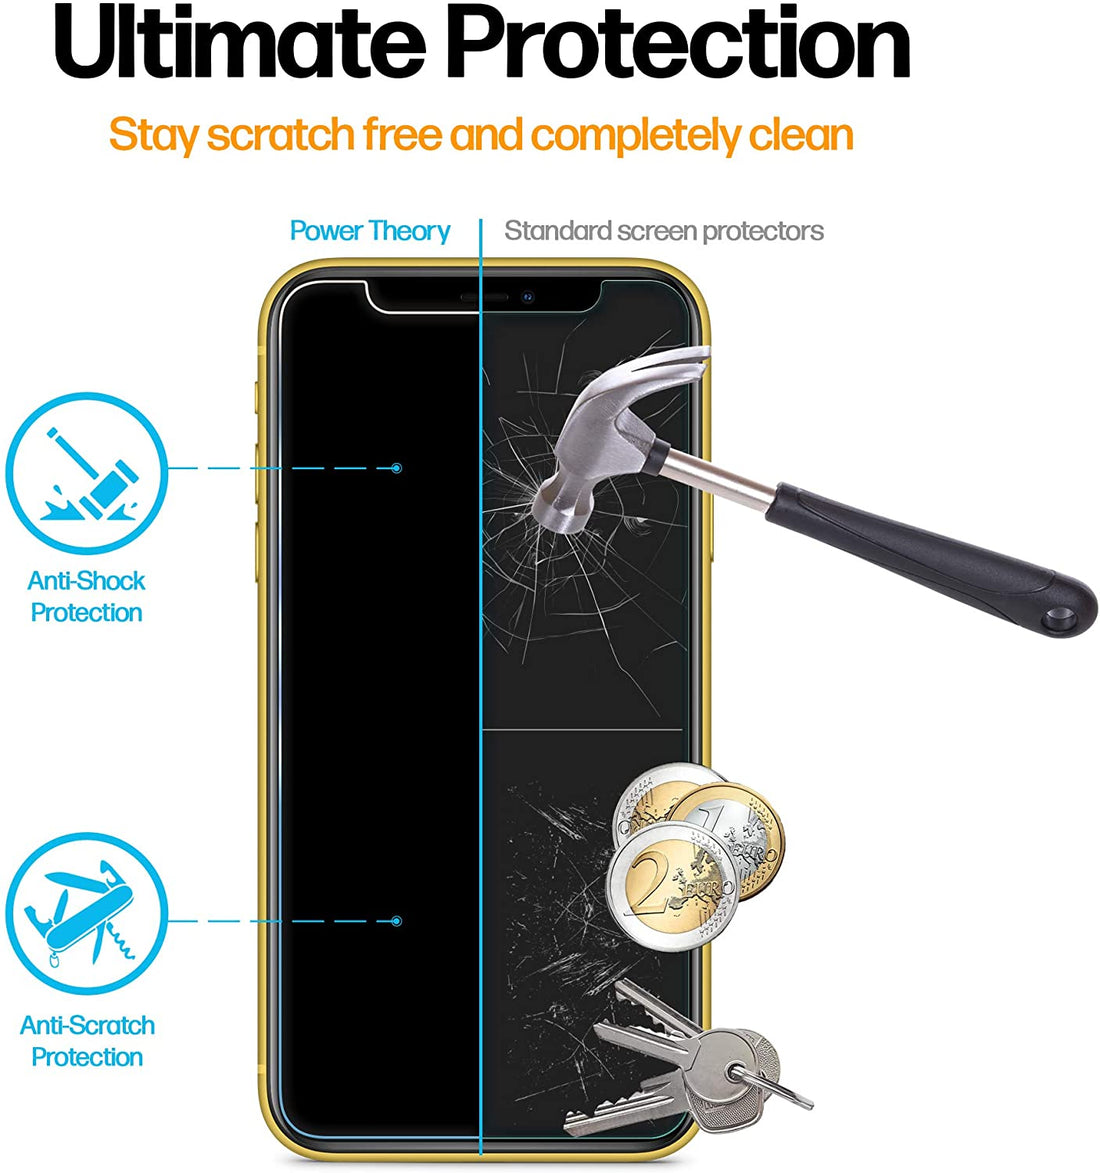 Power Theory Sichtschutz Schutzfolie kompatibel mit iPhone 11/iPhone XR [2 Stück] - Sichtschutzfolie mit Schablone, Schutzfolie, Glas Folie, Displayschutzfolie, Schutzglas Preview #4